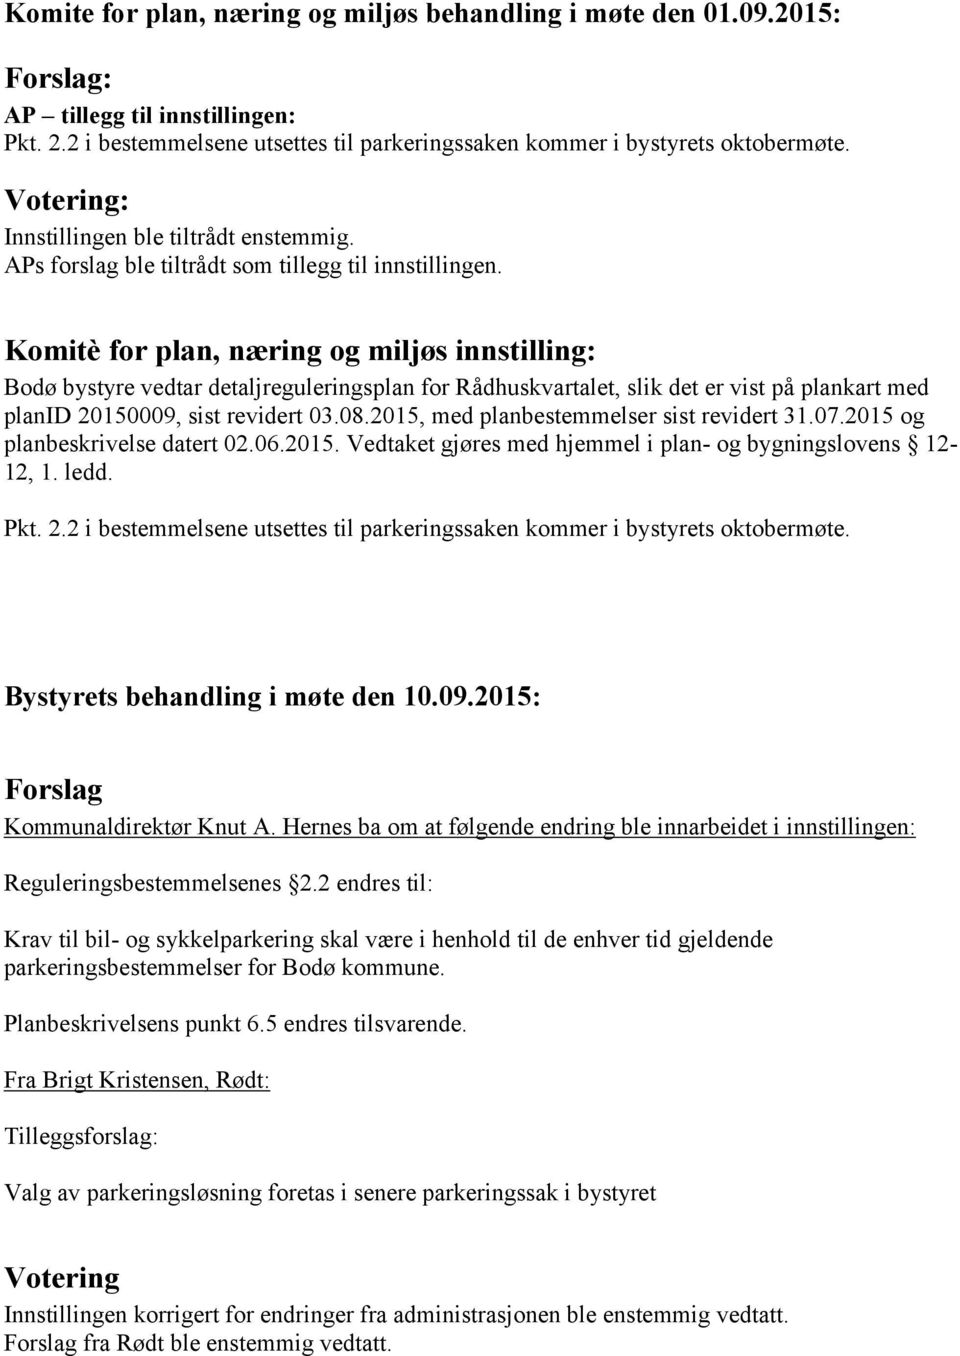 Komitè for plan, næring og miljøs innstilling: Bodø bystyre vedtar detaljreguleringsplan for Rådhuskvartalet, slik det er vist på plankart med planid 20150009, sist revidert 03.08.